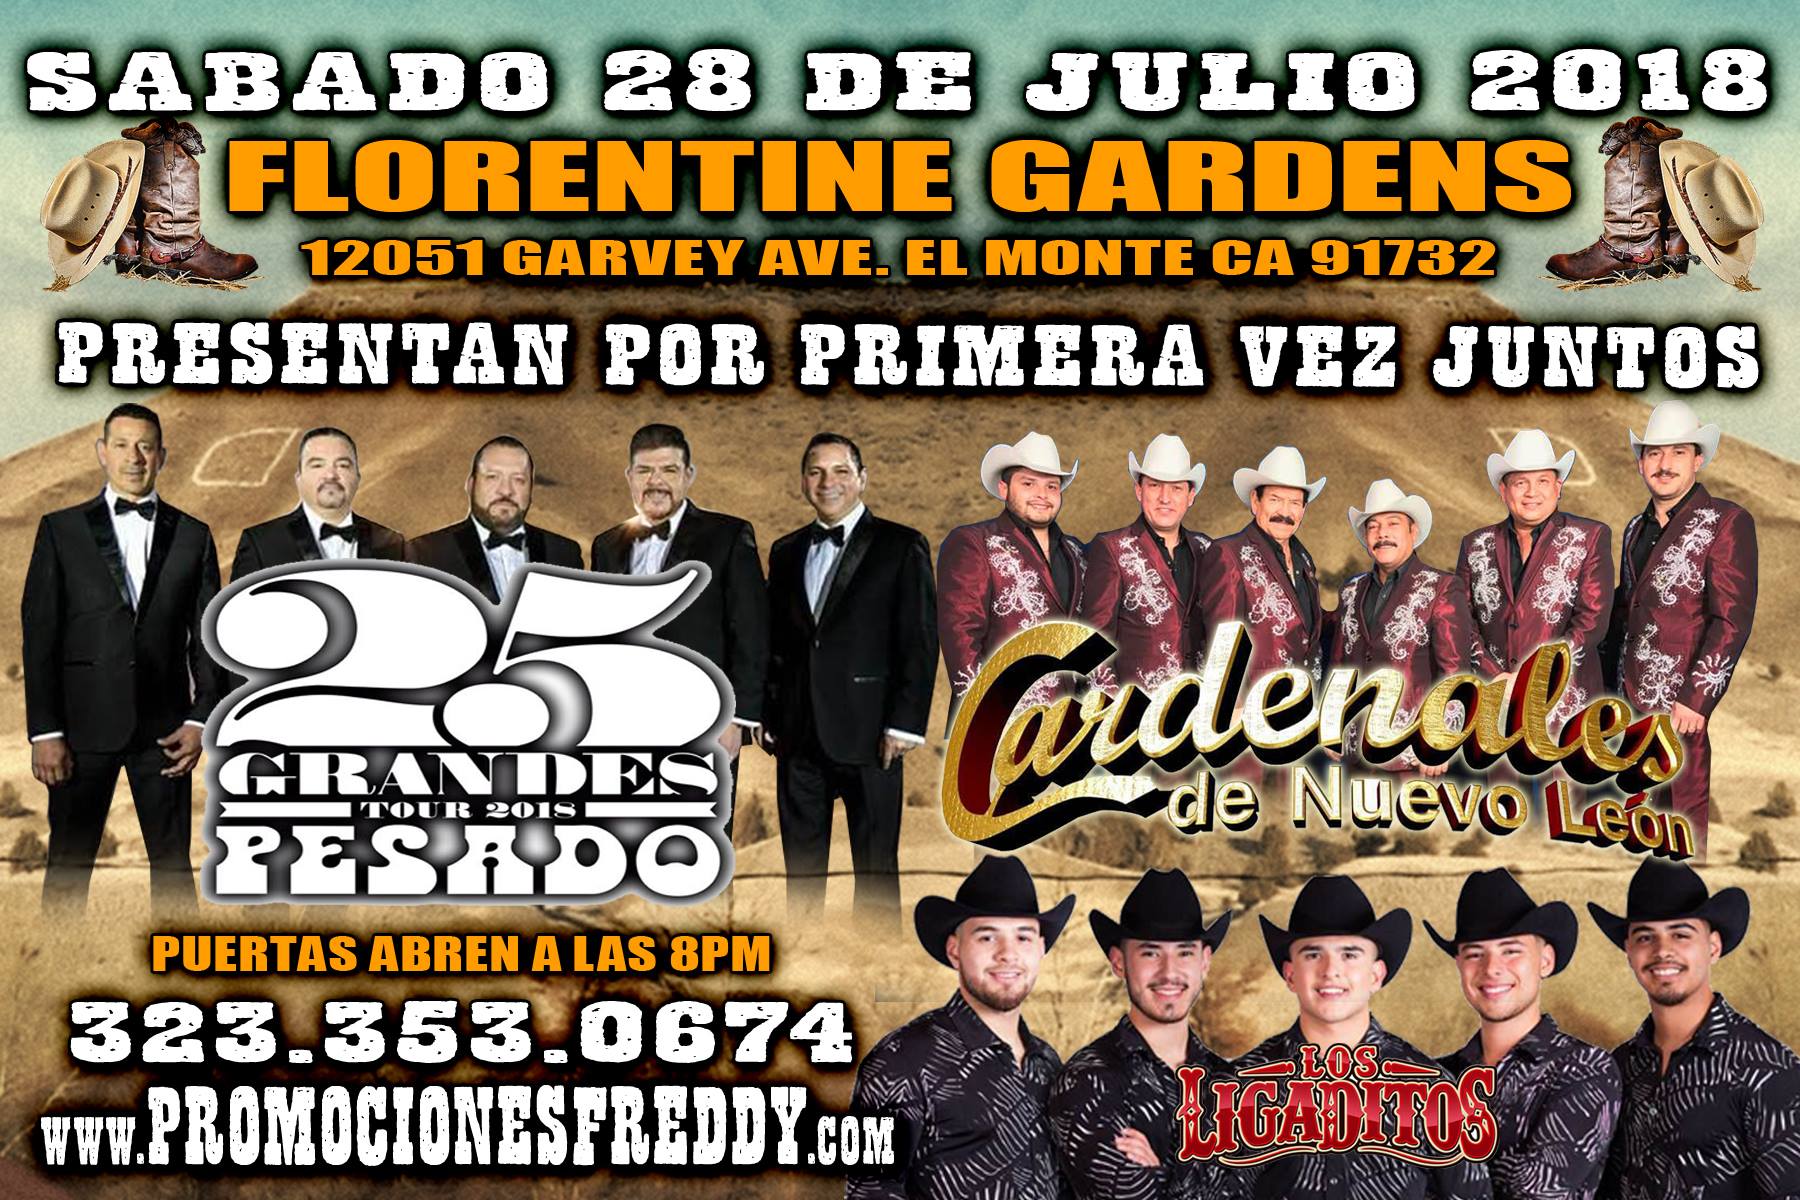 Cardinales De Nuevo Leon Tickets 07 28 18